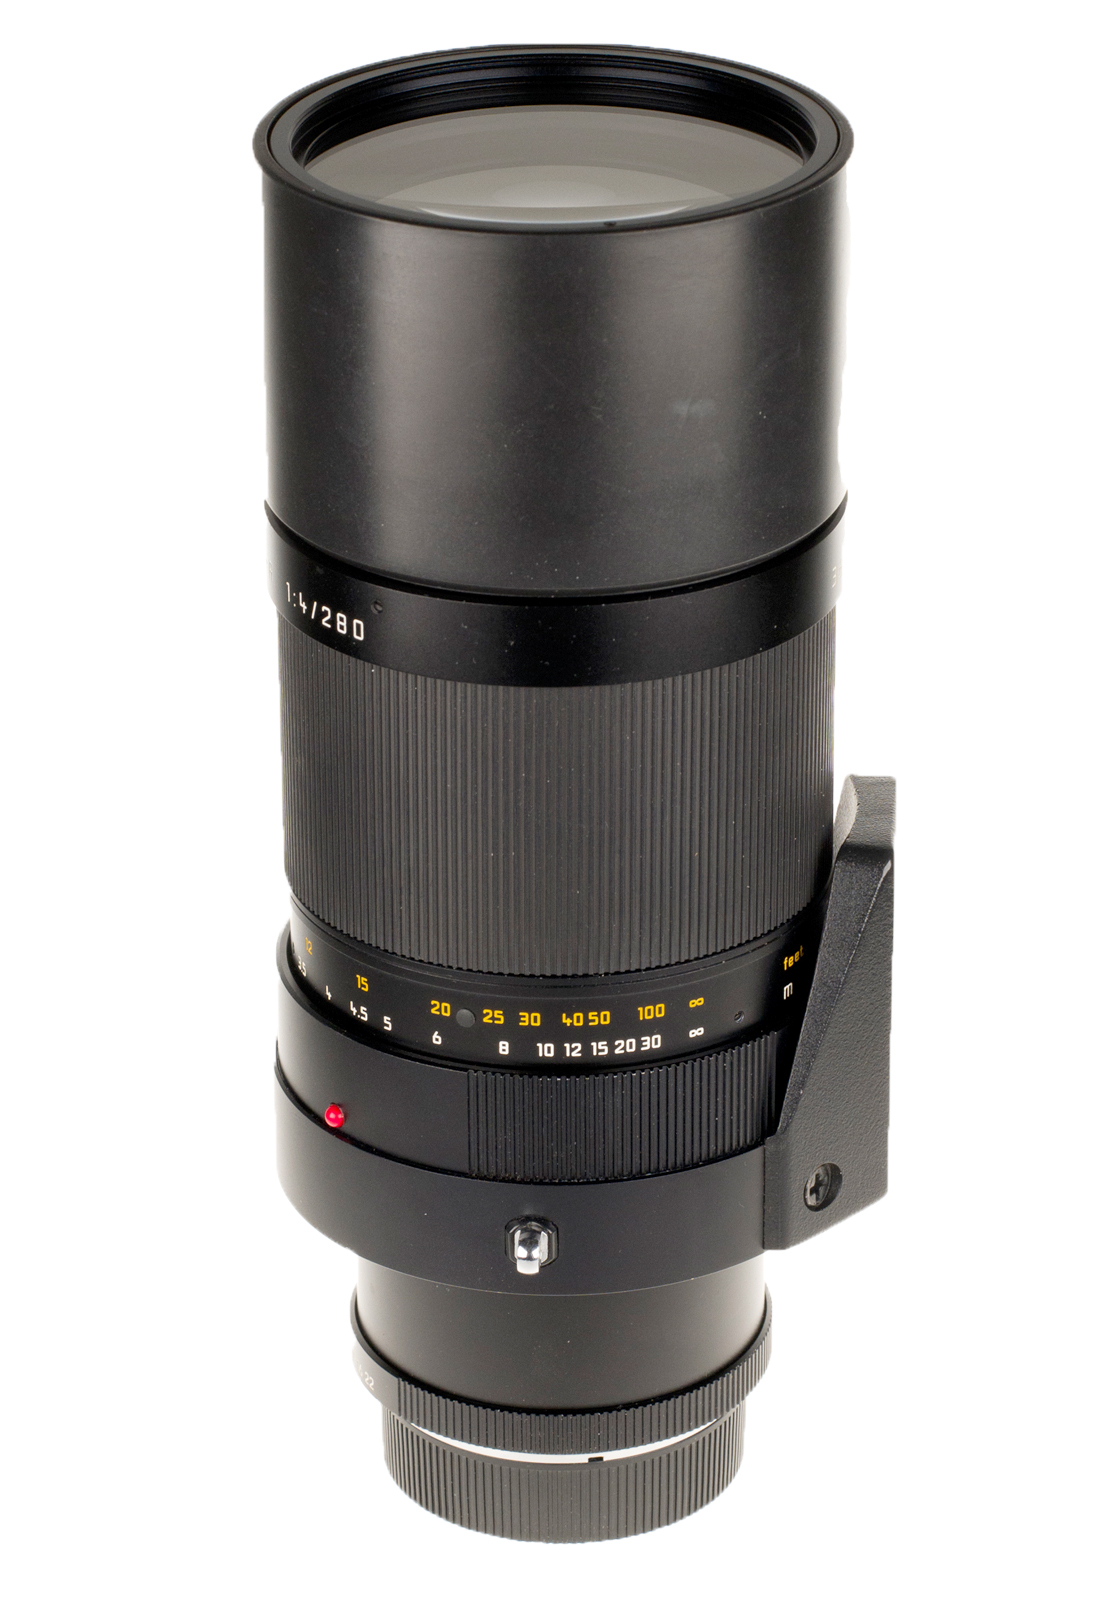 Leica APO-Telyt-R 1:4/280mm + CLA Zertifikat